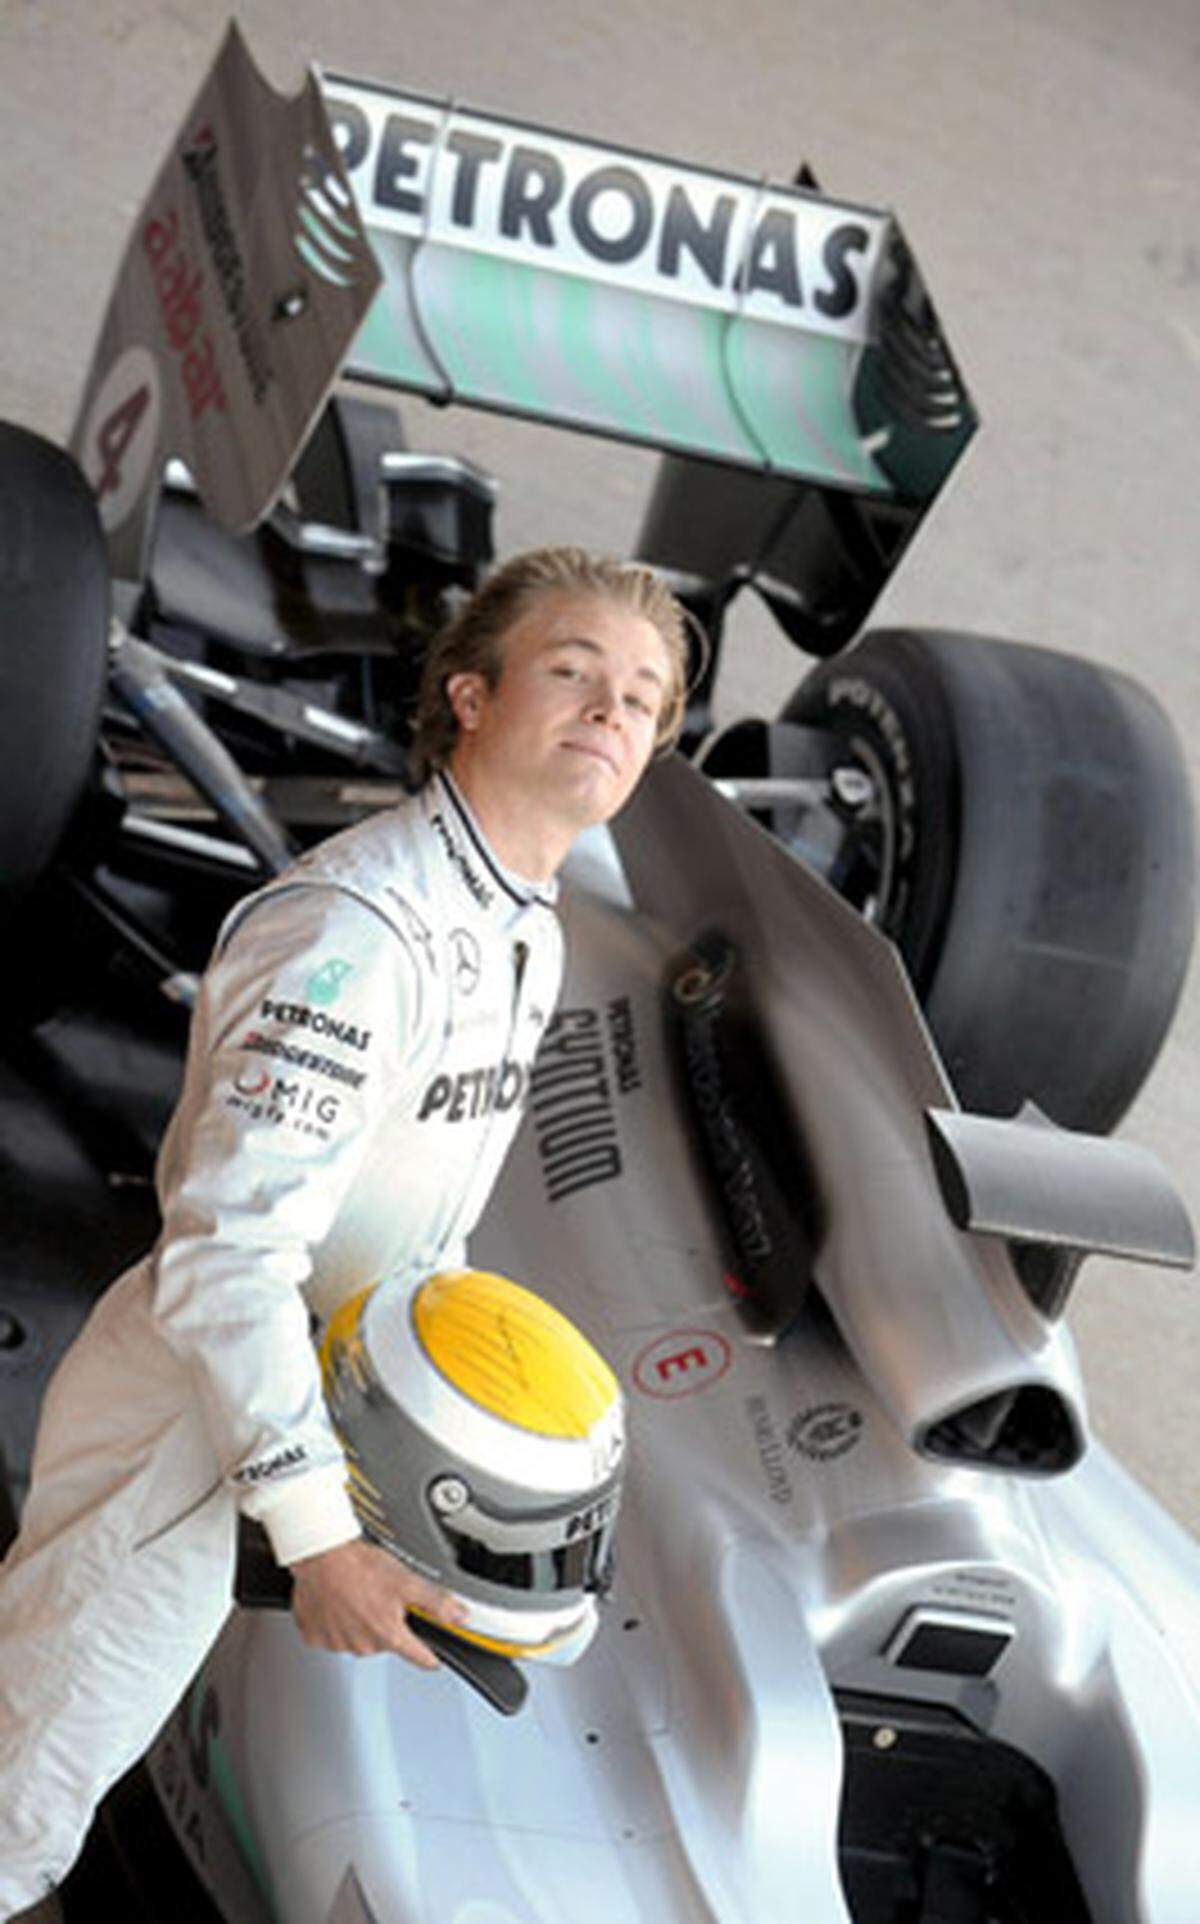 Sein Landsmann und Teamkollege Nico Rosberg durfte dann die ersten Runden auf dem Circuit Ricardo Tormo in Valencia drehen.